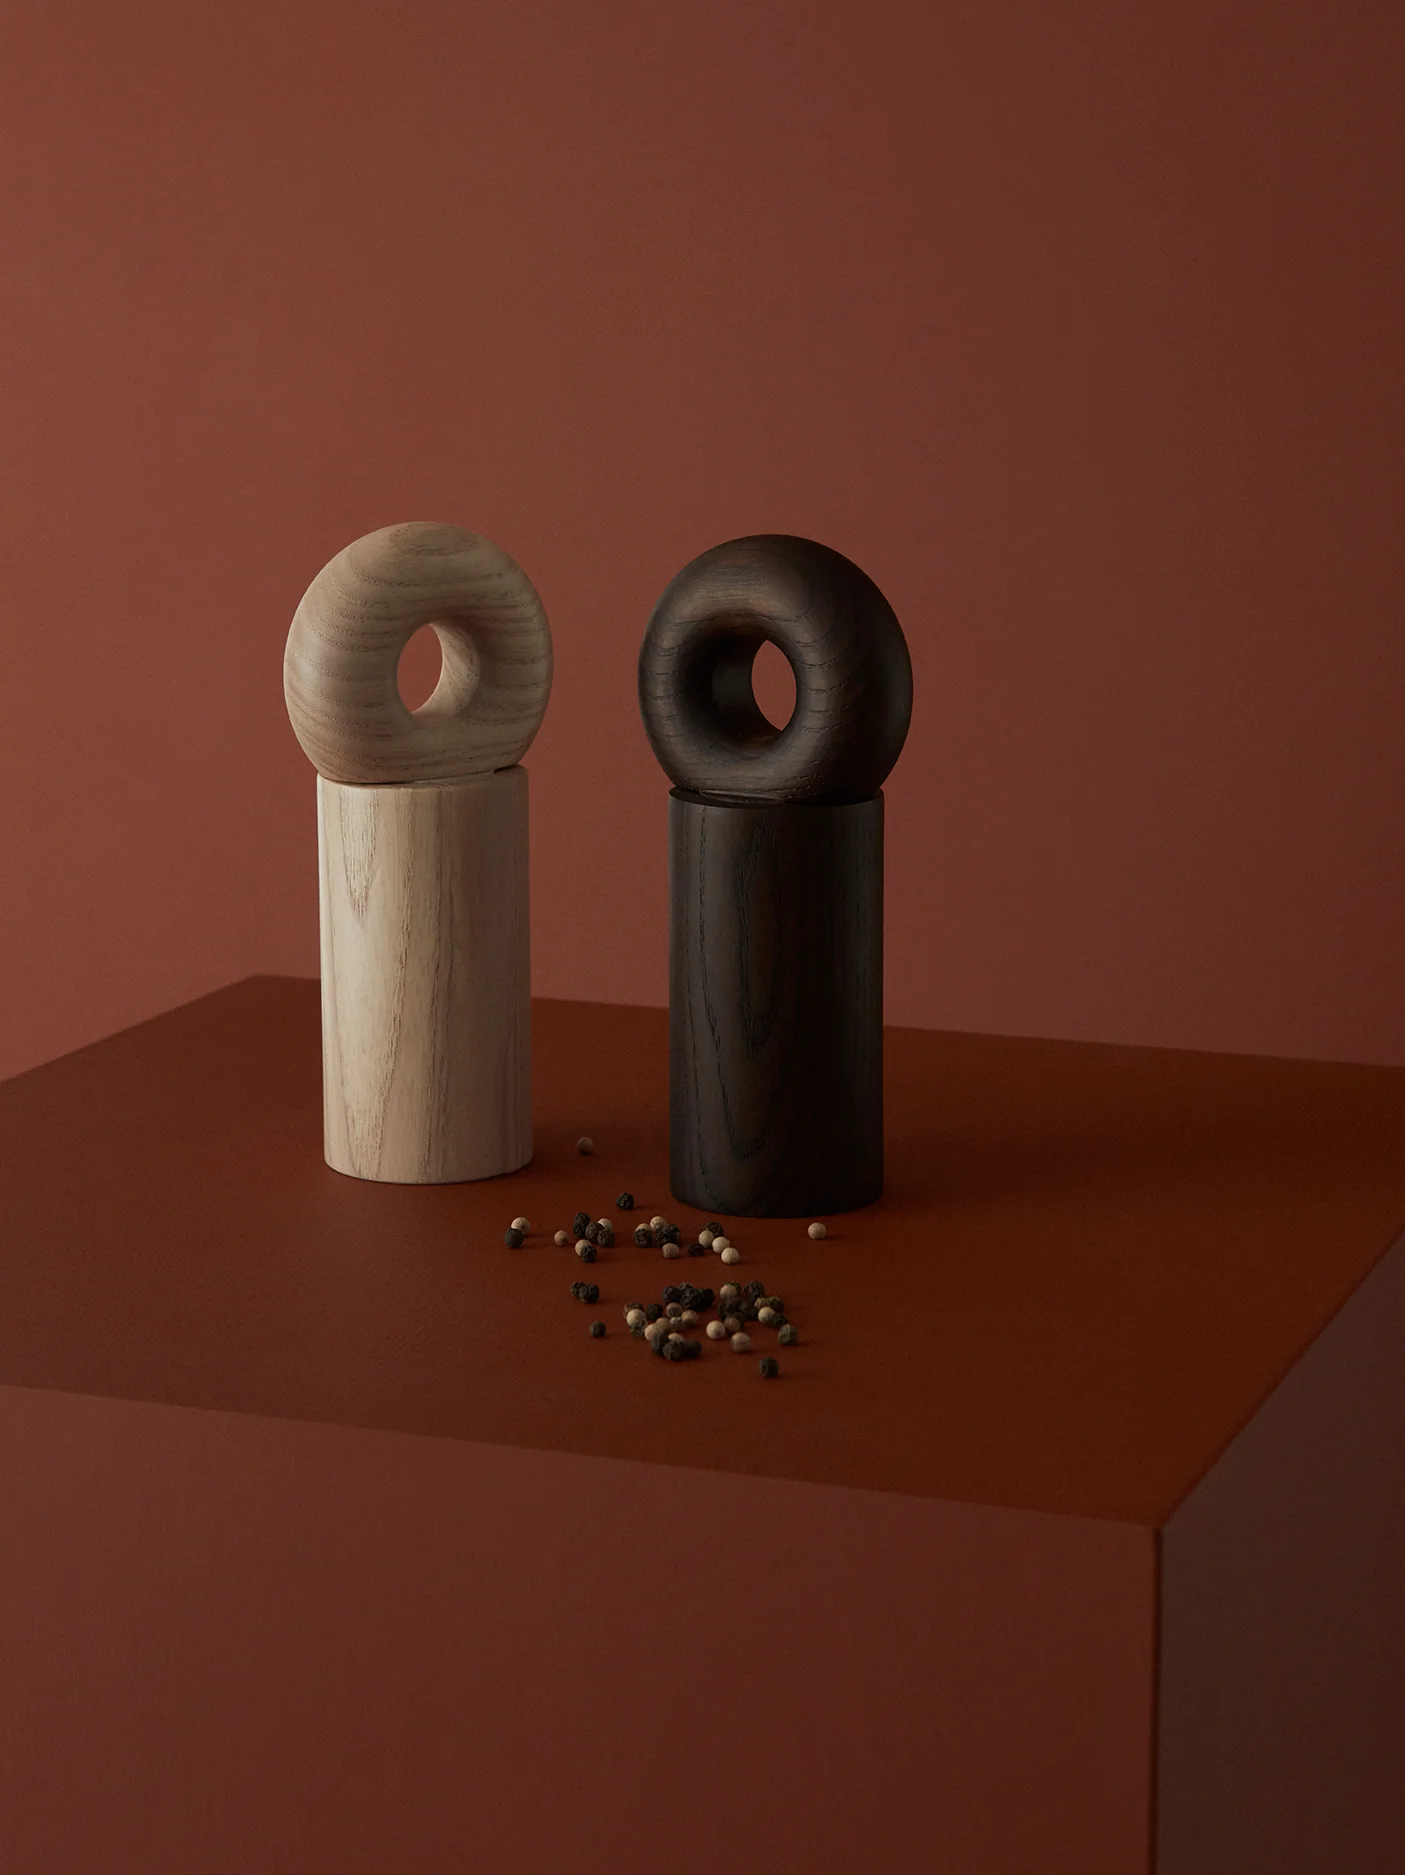 10 Salt and pepper grinder set designs for the modern interior - COCO  LAPINE DESIGNCOCO LAPINE DESIGN